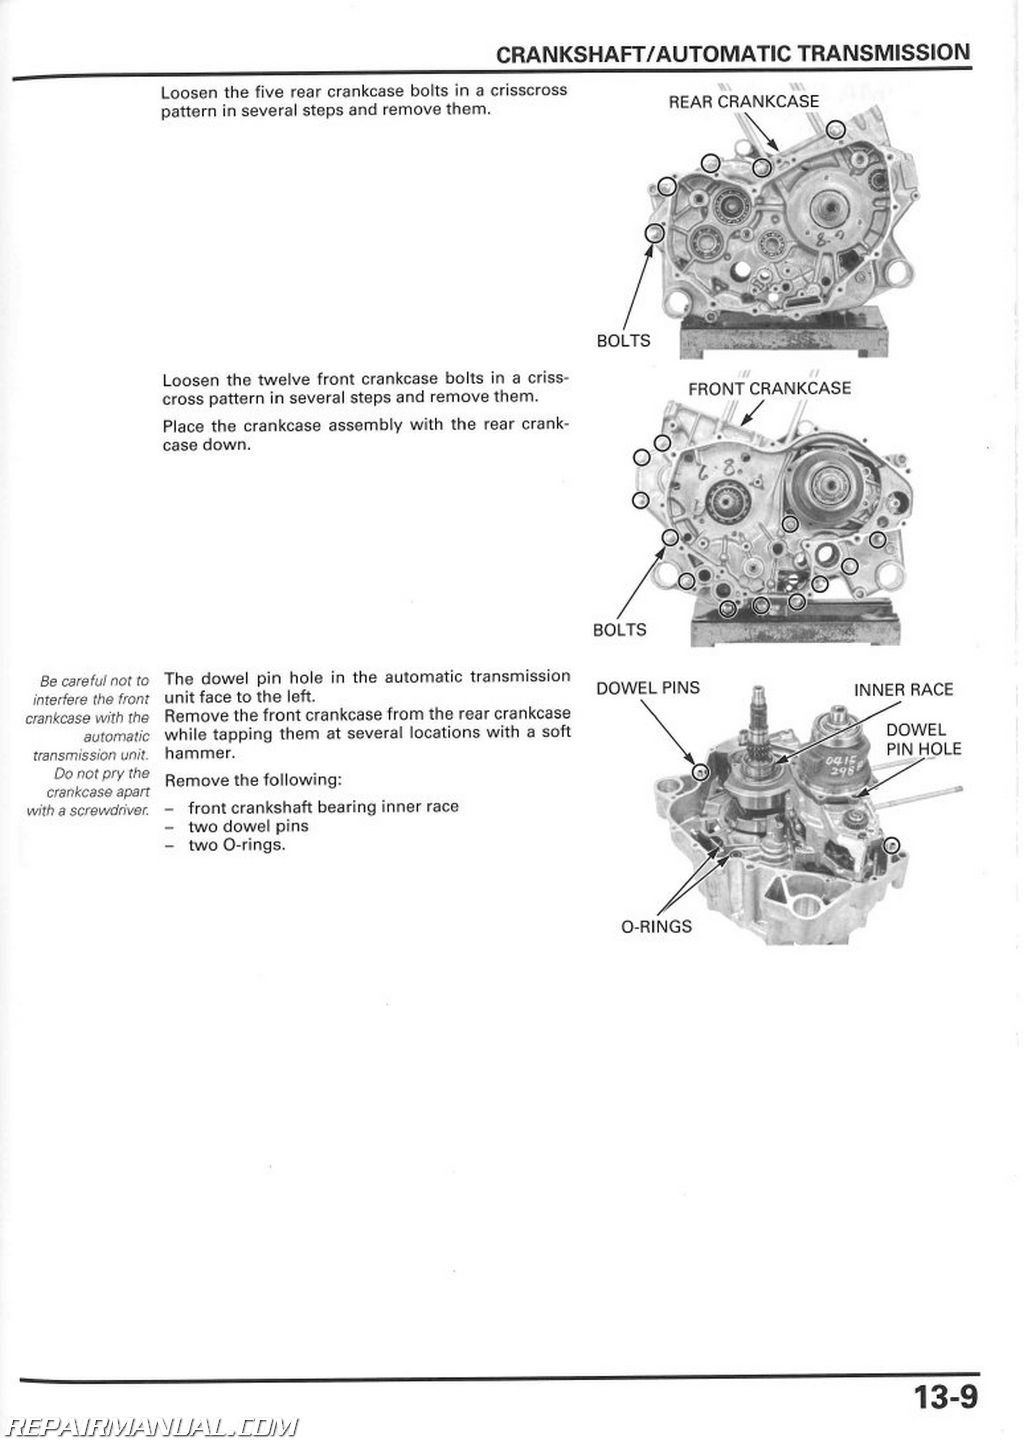 Honda TRX500 500 Foreman Repair Shop Manual 2005 & 2006 on CD 